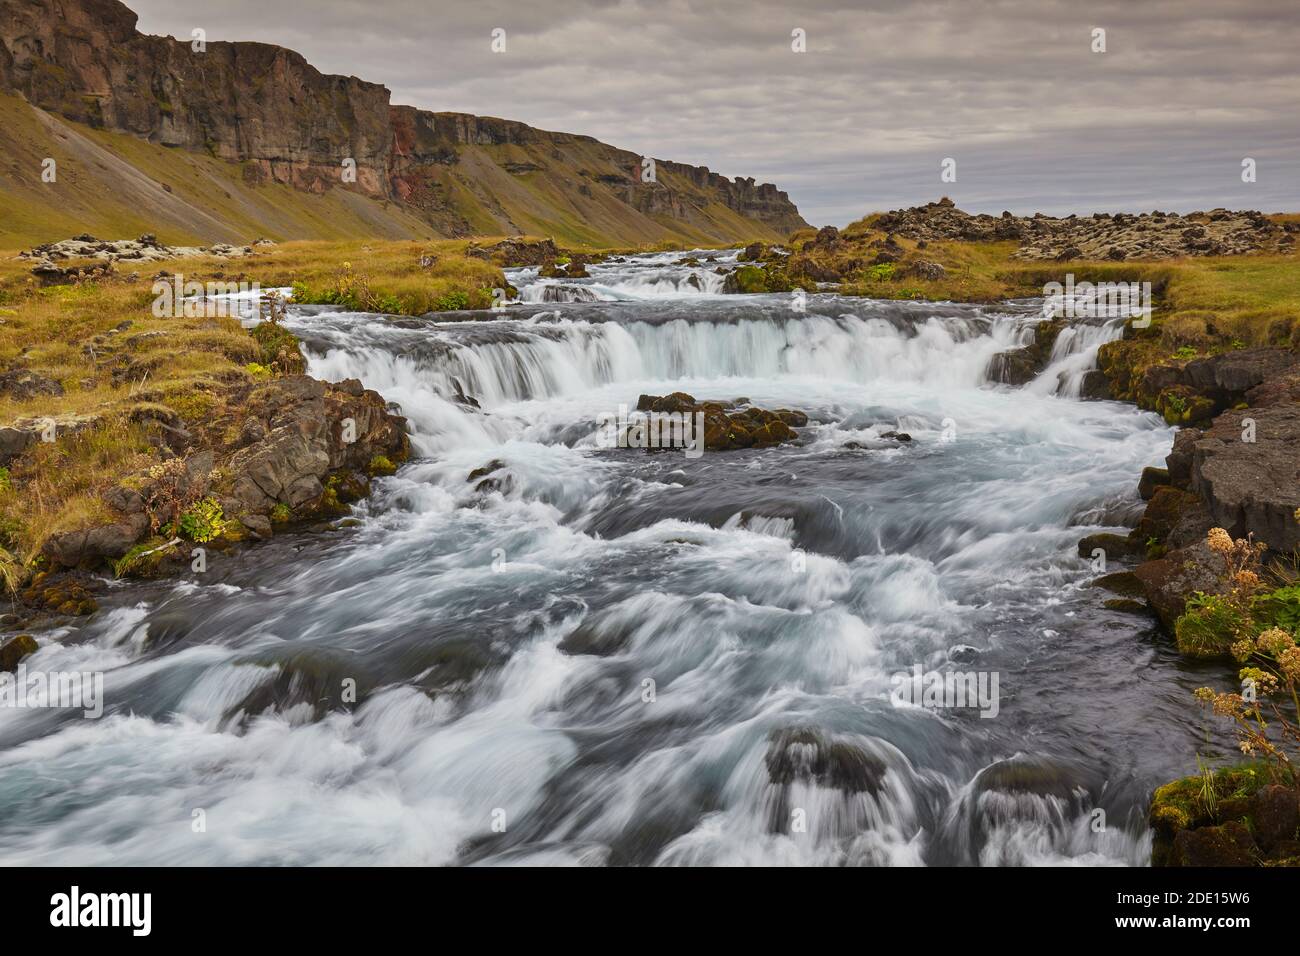 Eine klassische isländische Landschaft, ein Fluss fließt entlang der Basis einer Klippe, der Fossalar River, in der Nähe von Kirkjubaejarklaustur, Island, Polarregionen Stockfoto